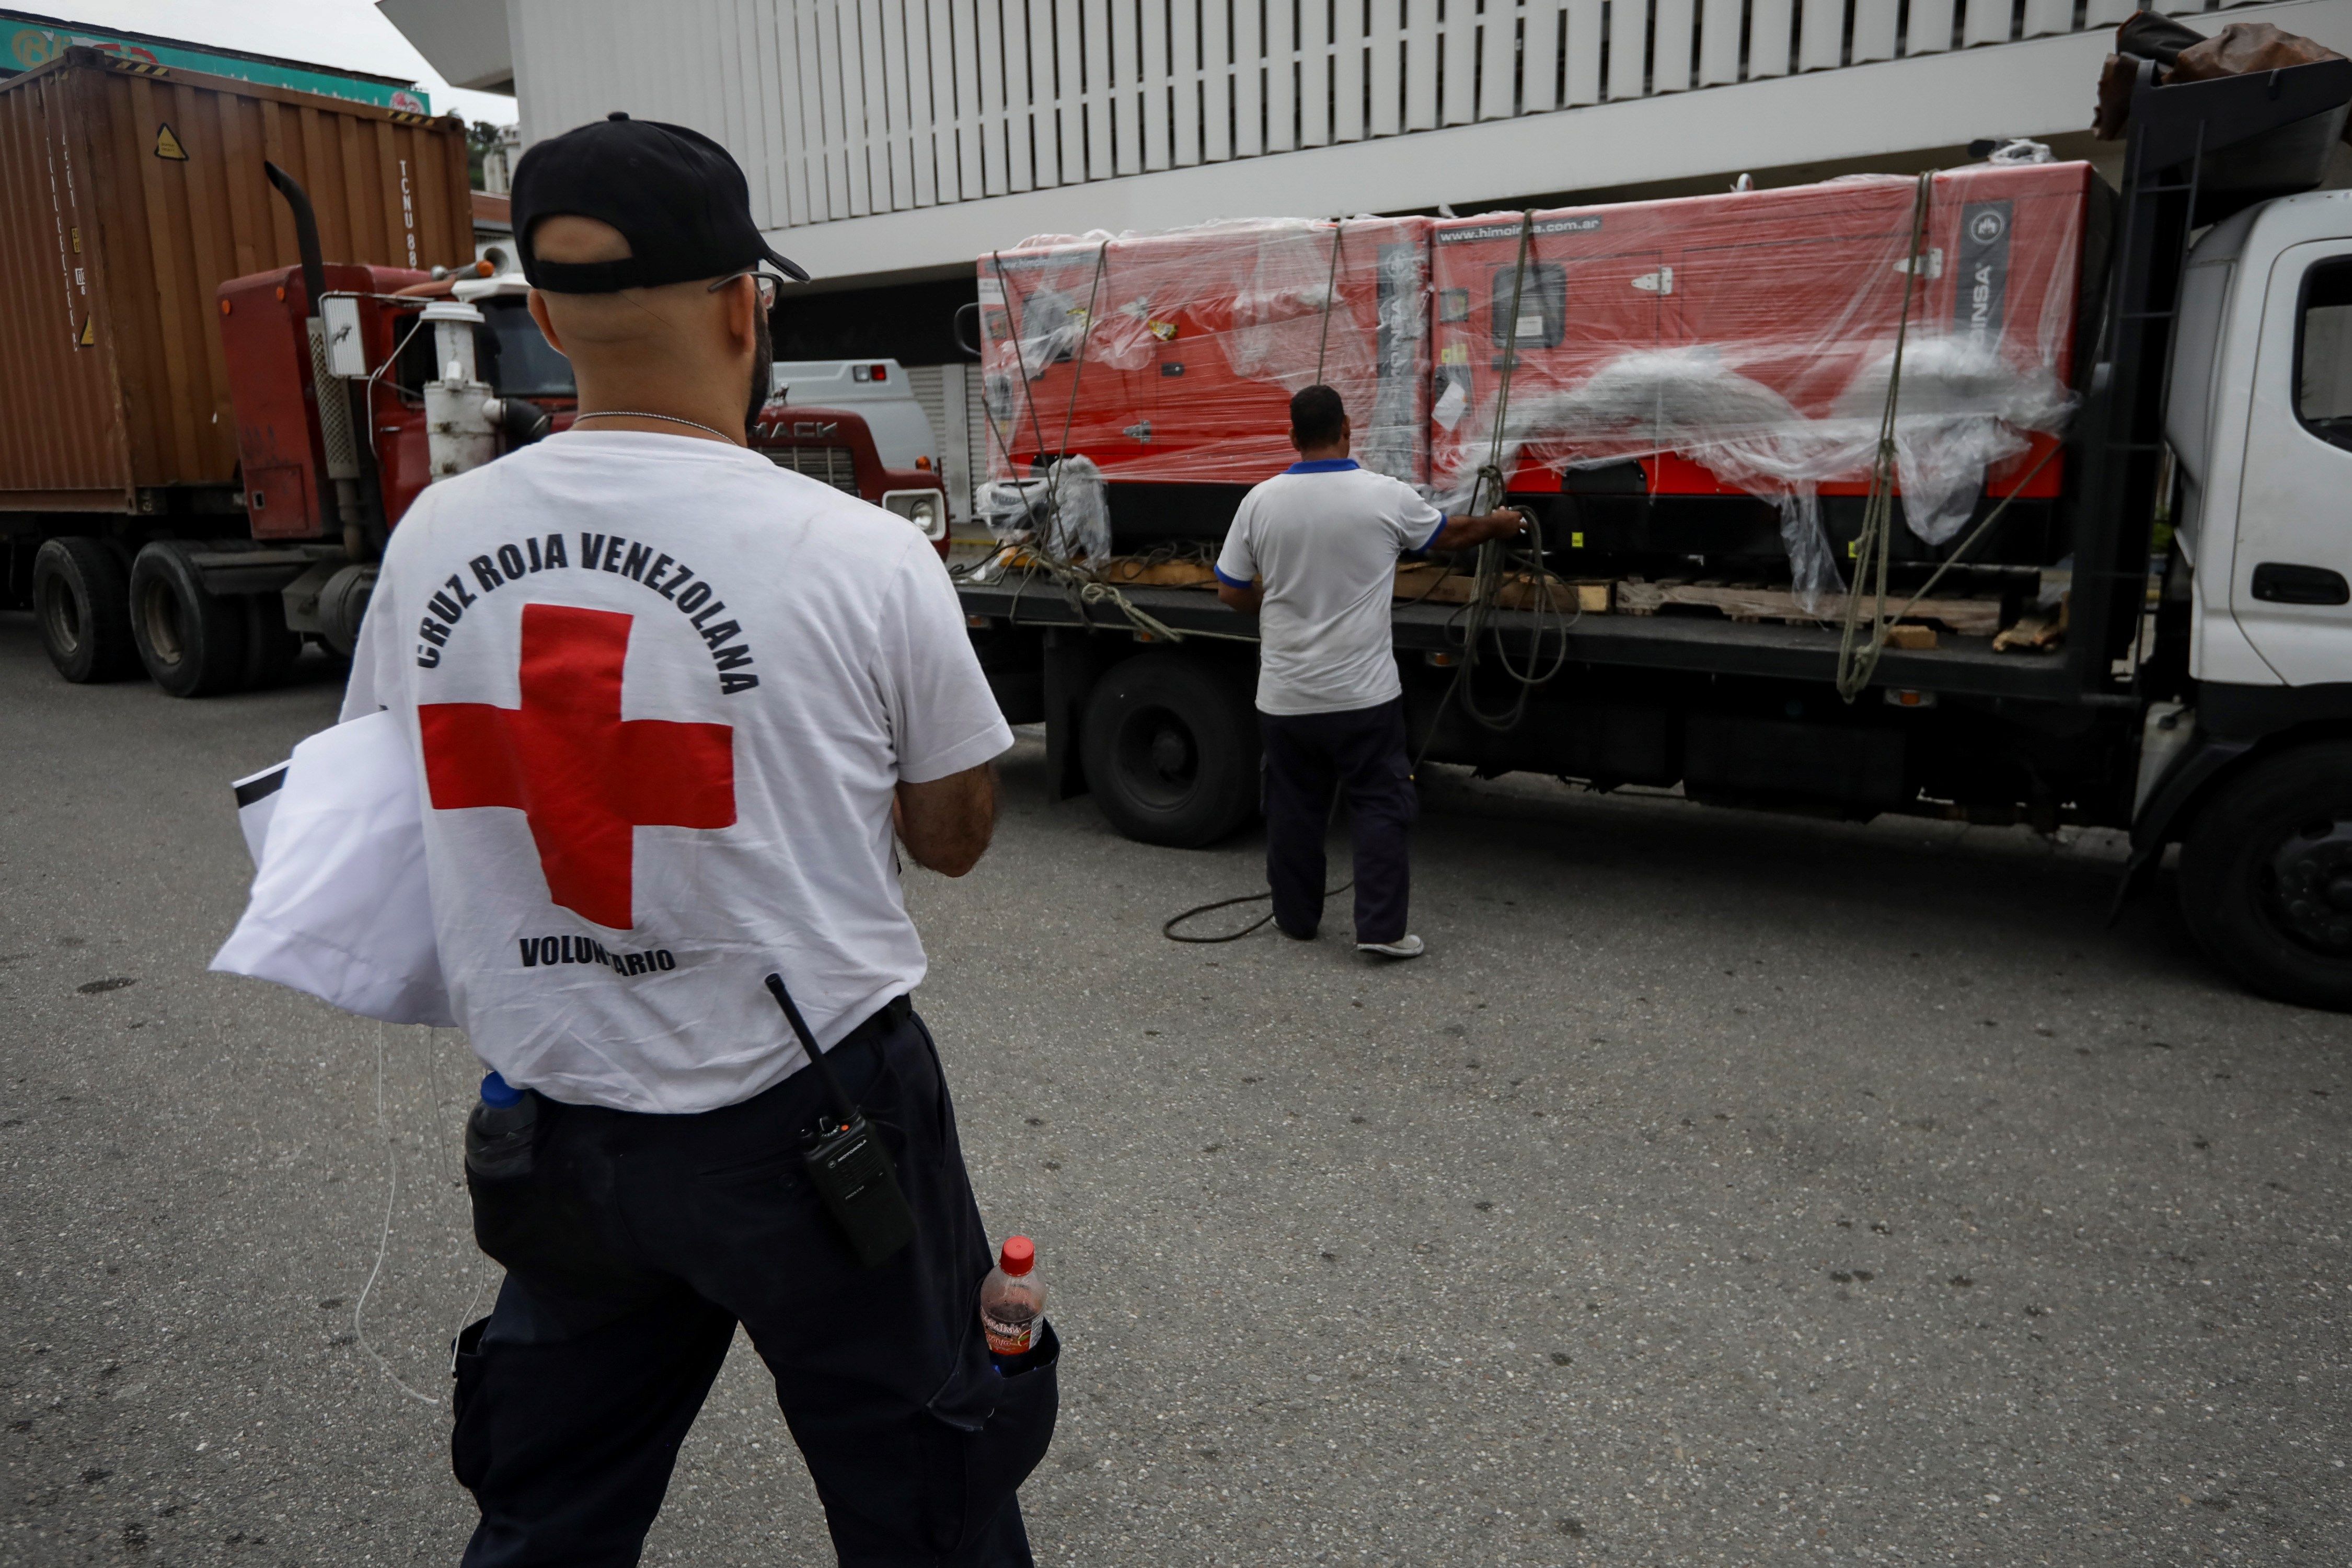 Cruz Roja y Nicolás firmaron convenio para ampliar ayuda humanitaria a Venezuela